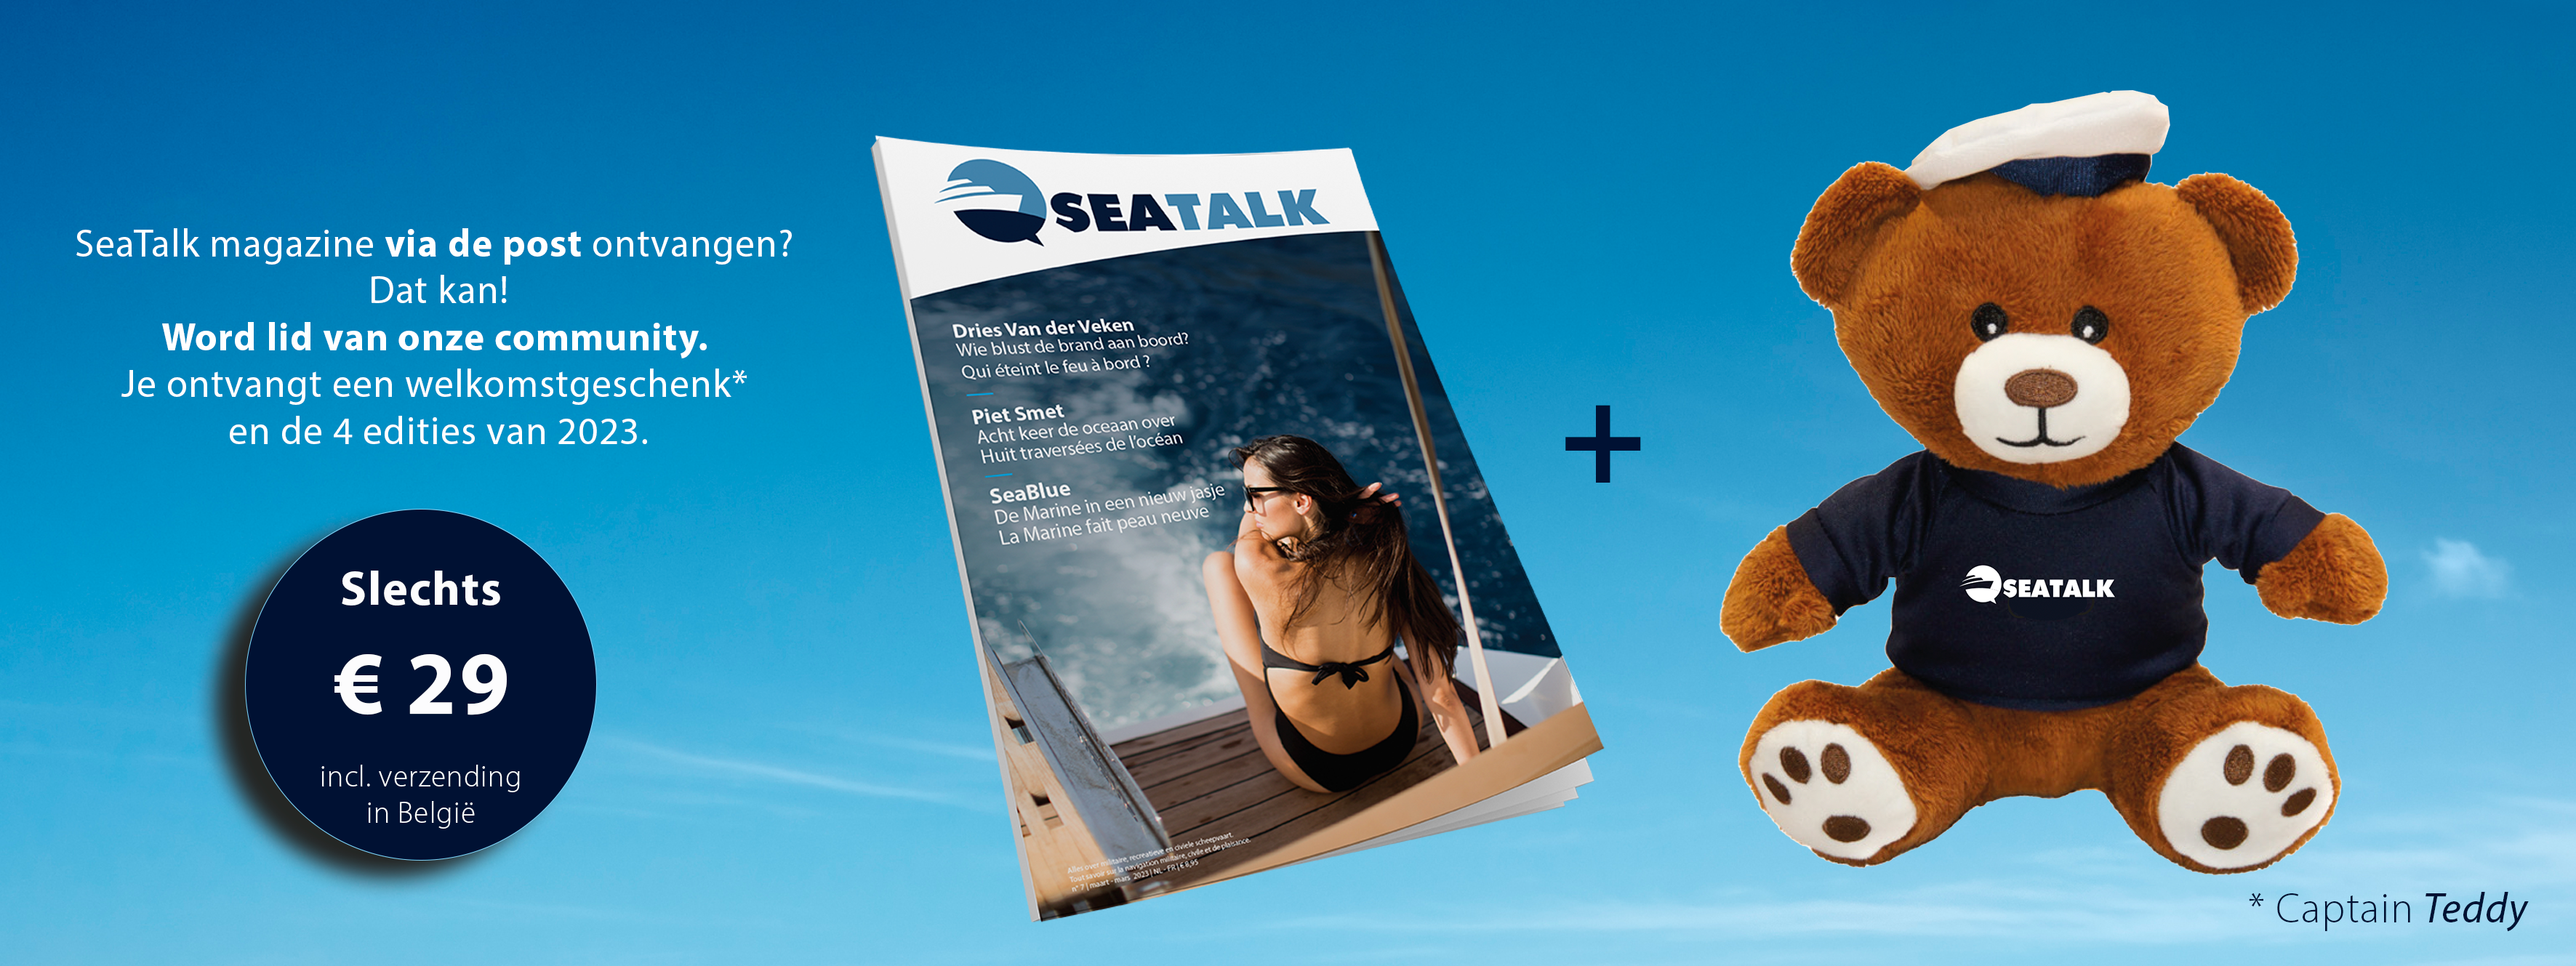 SeaTalk Magazine Membership 2023 + welkomstgeschenk Captain Teddy